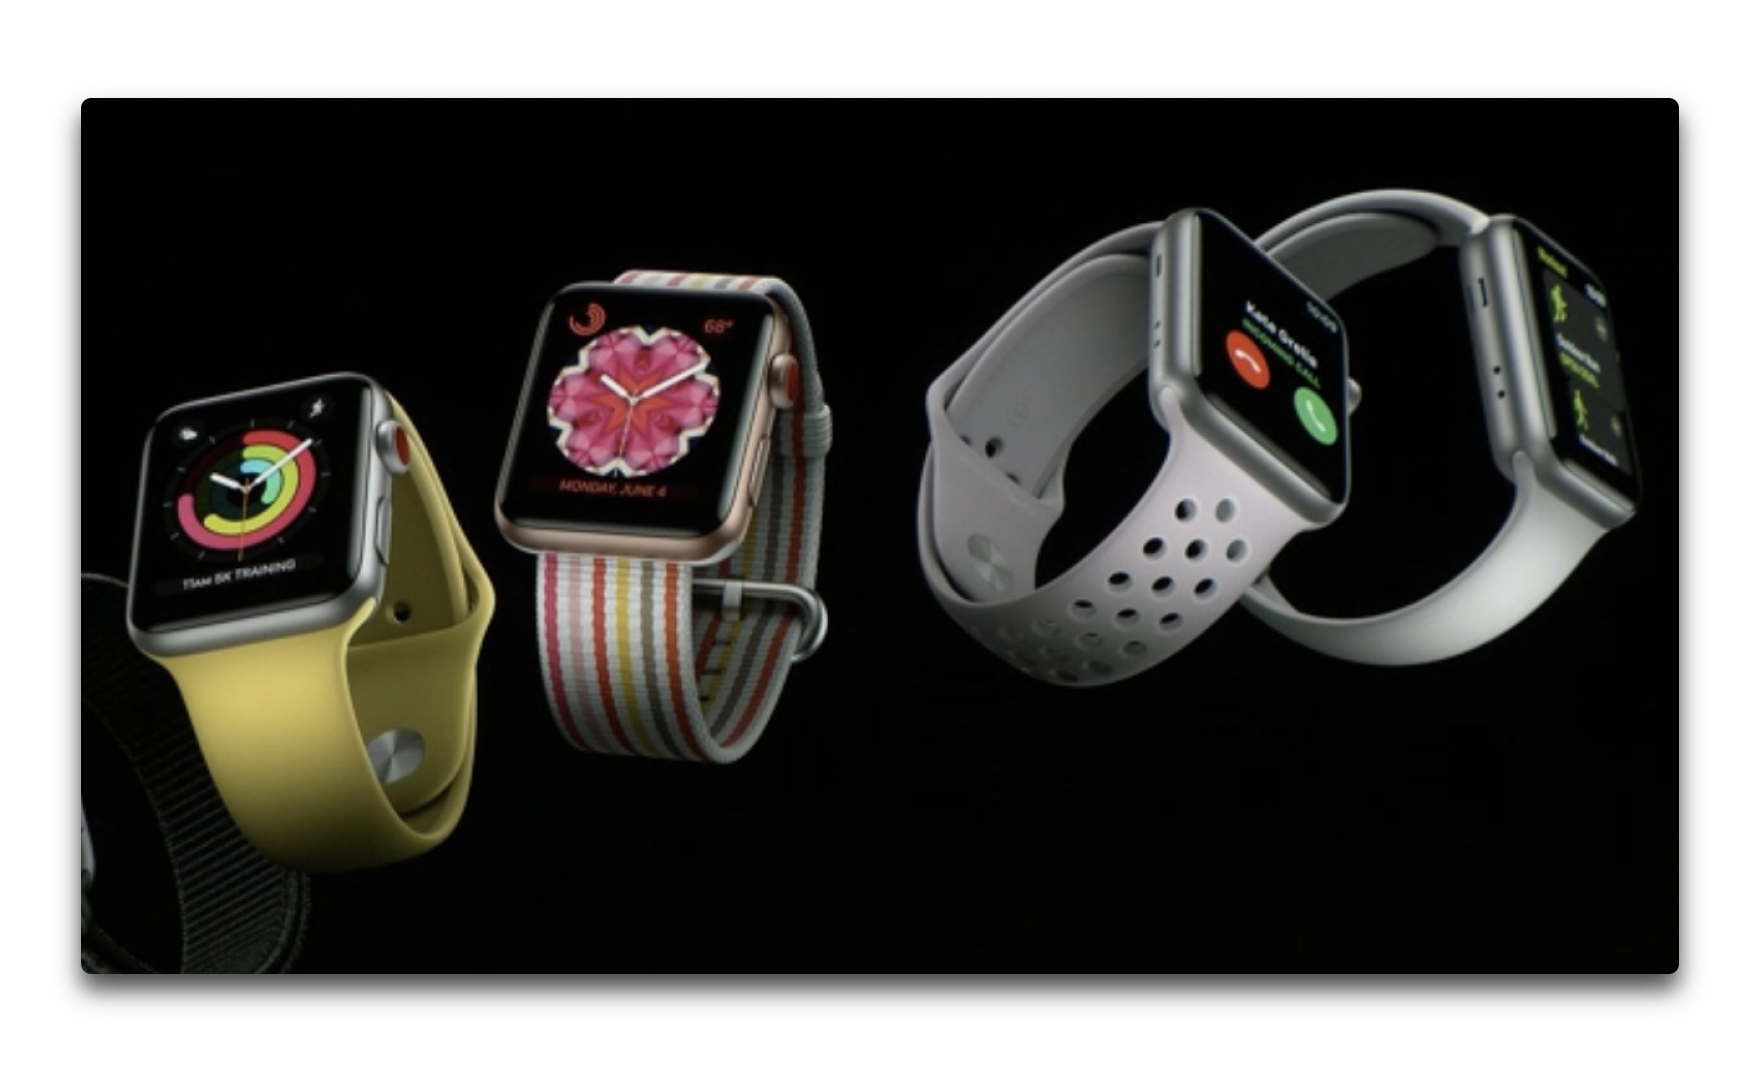 Apple Watchのソフトウェア・アップデートをスピードアップする方法